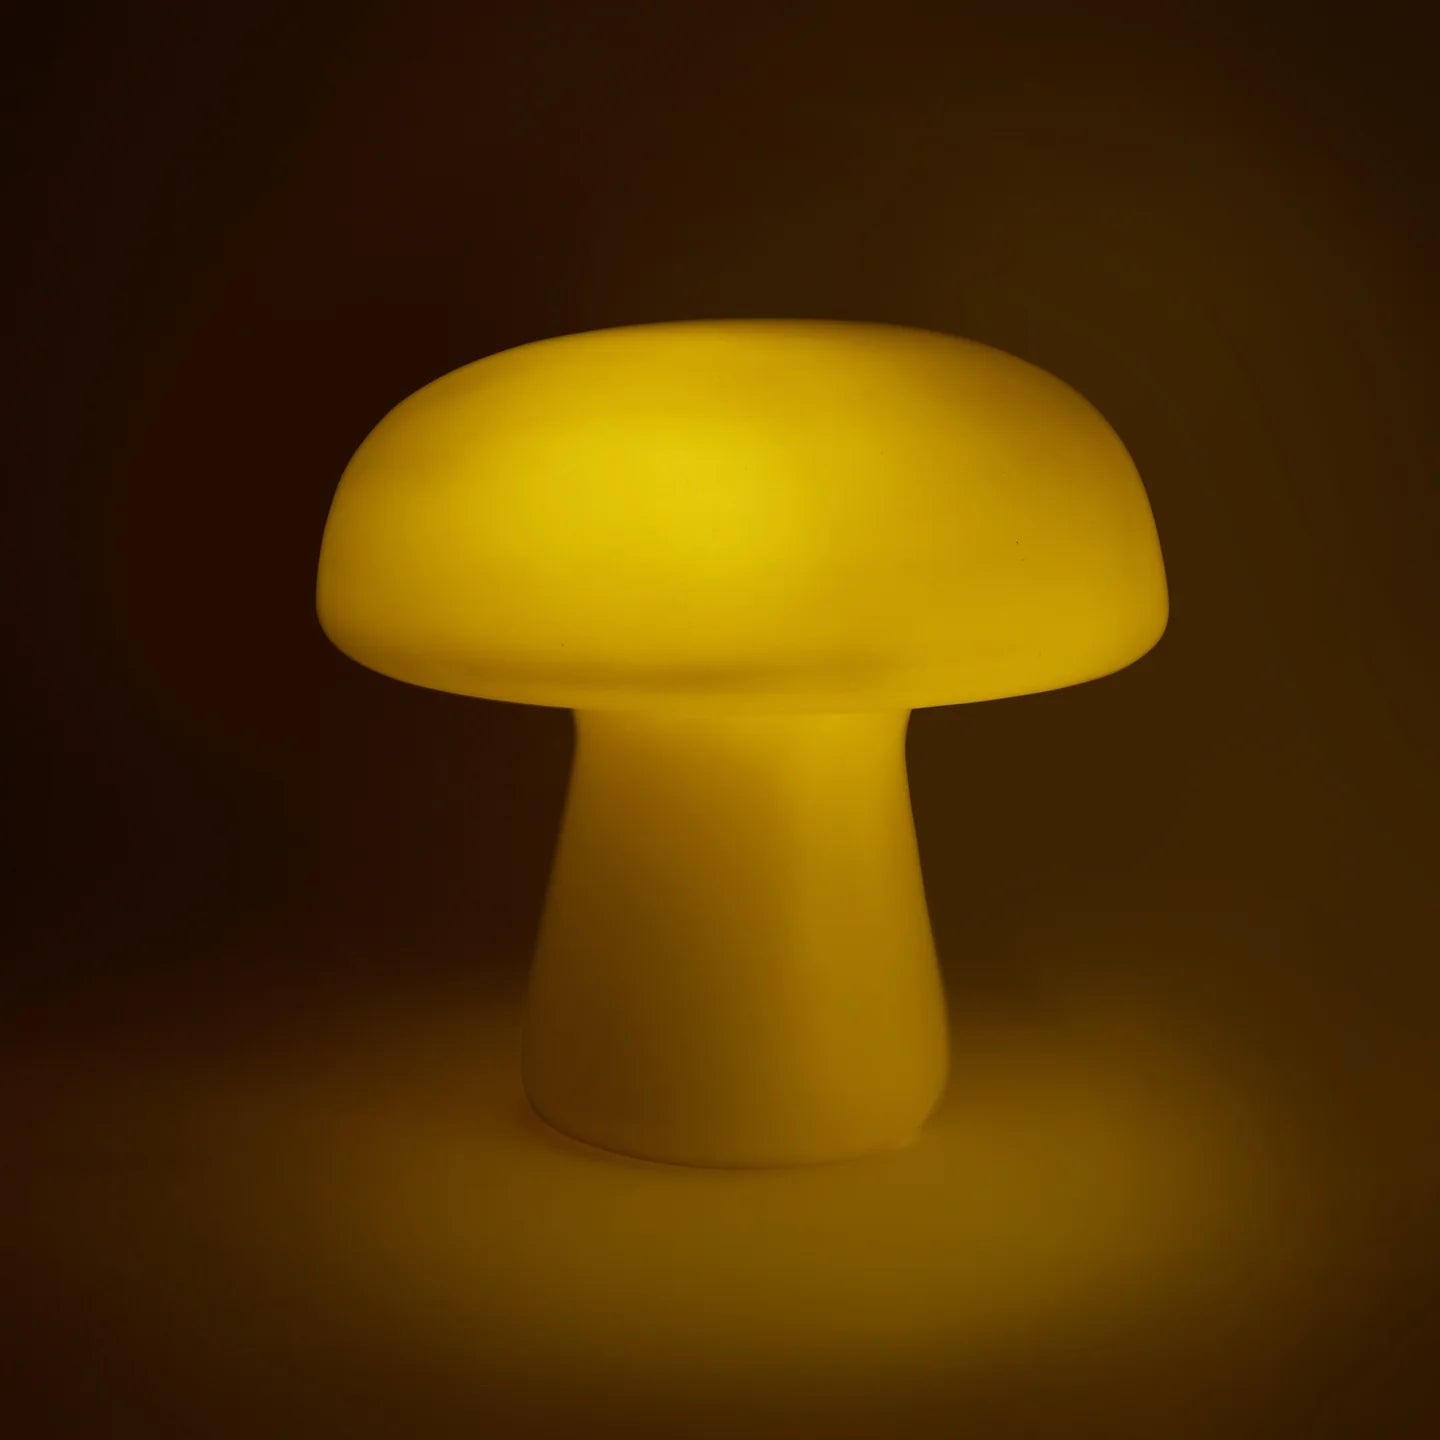 Large Mushroom LED Lamp Night Light